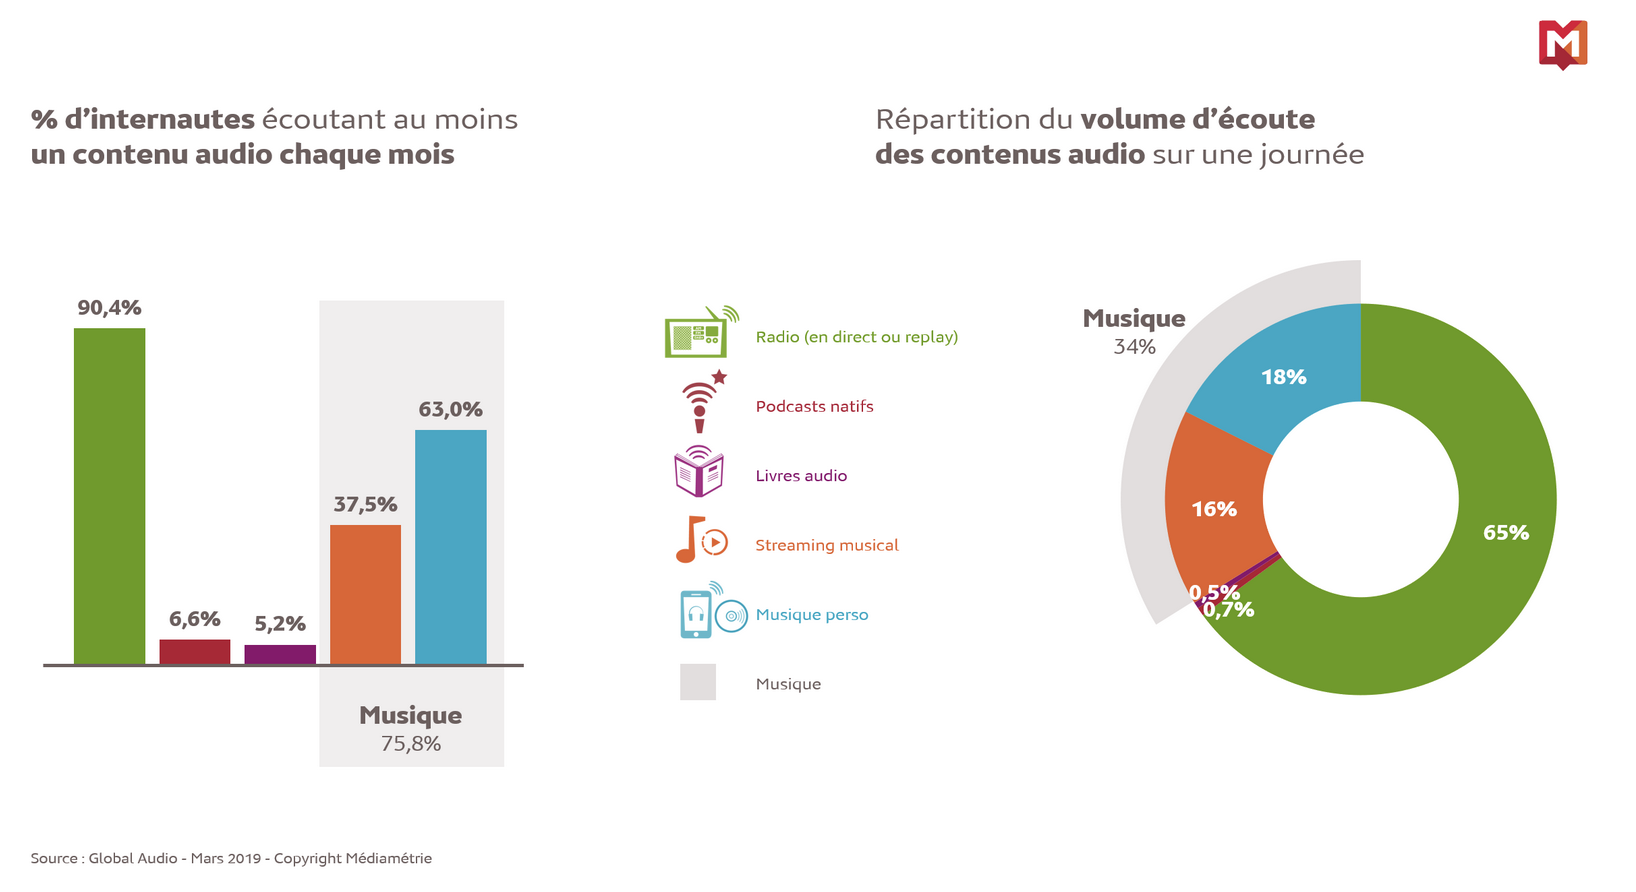 96% des internautes écoutent des contenus audio chaque mois